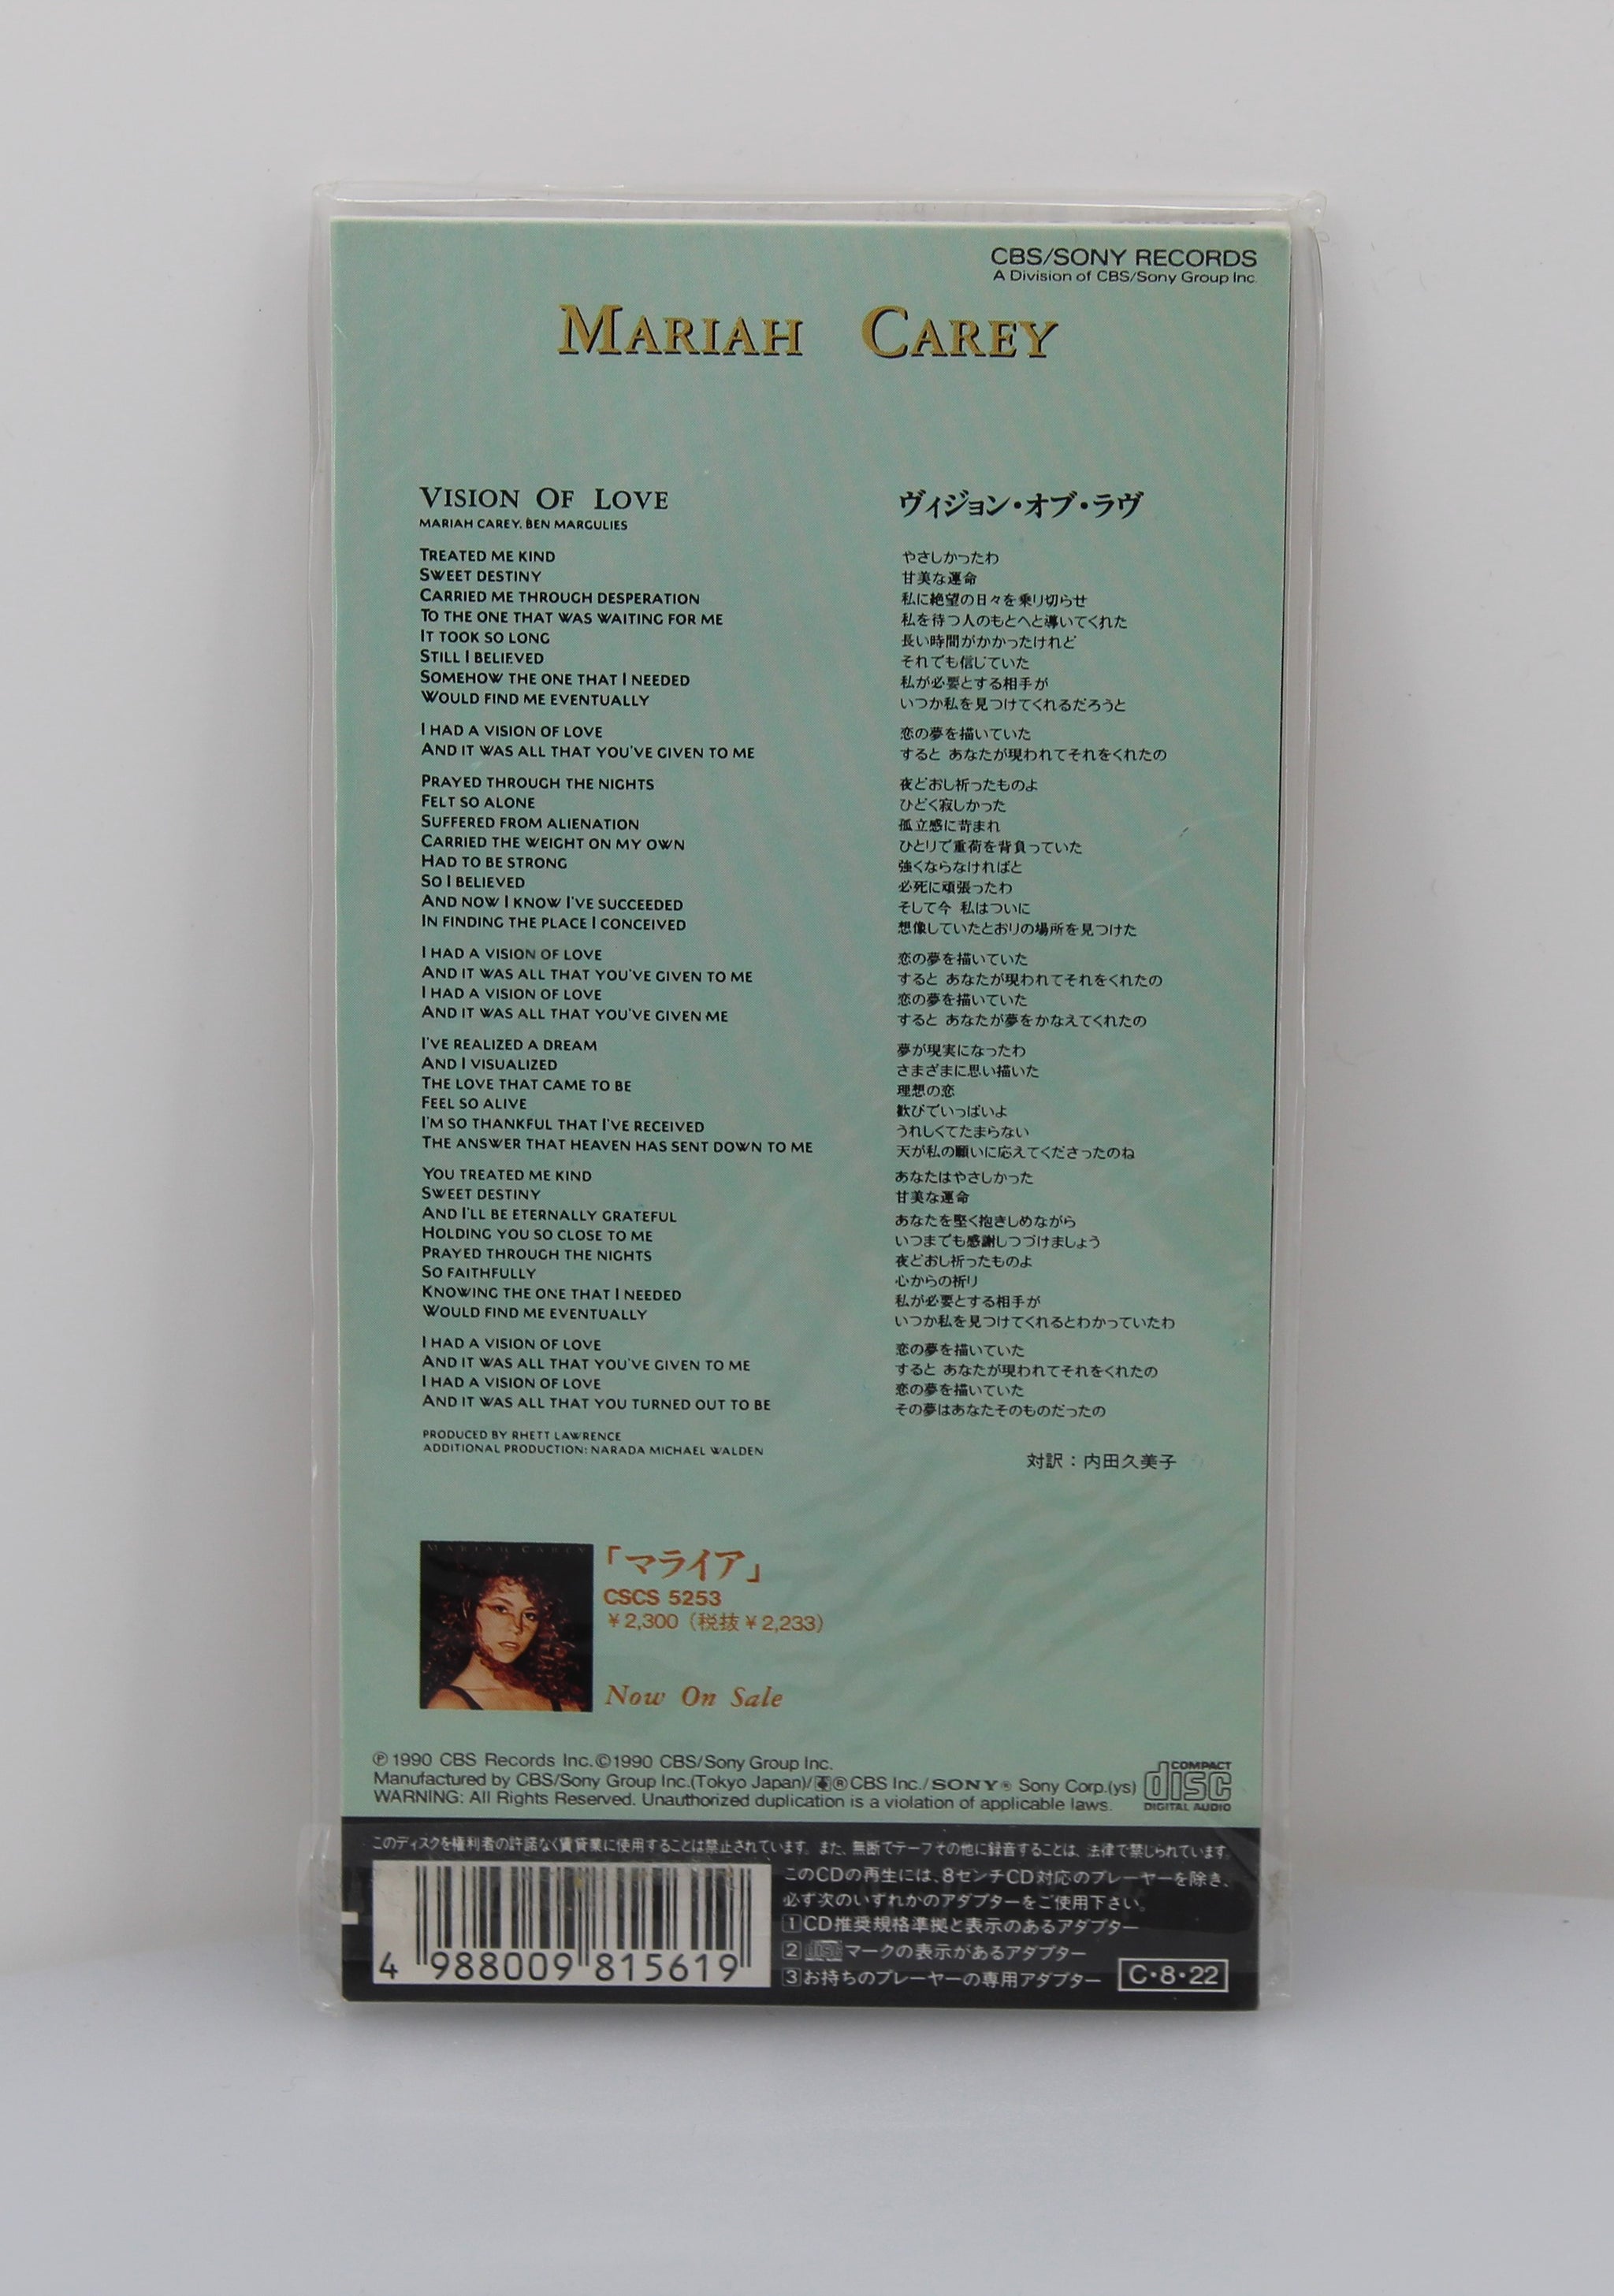 Mariah Carey – Vision Of Love, CD, Single, Mini, Japan 1990